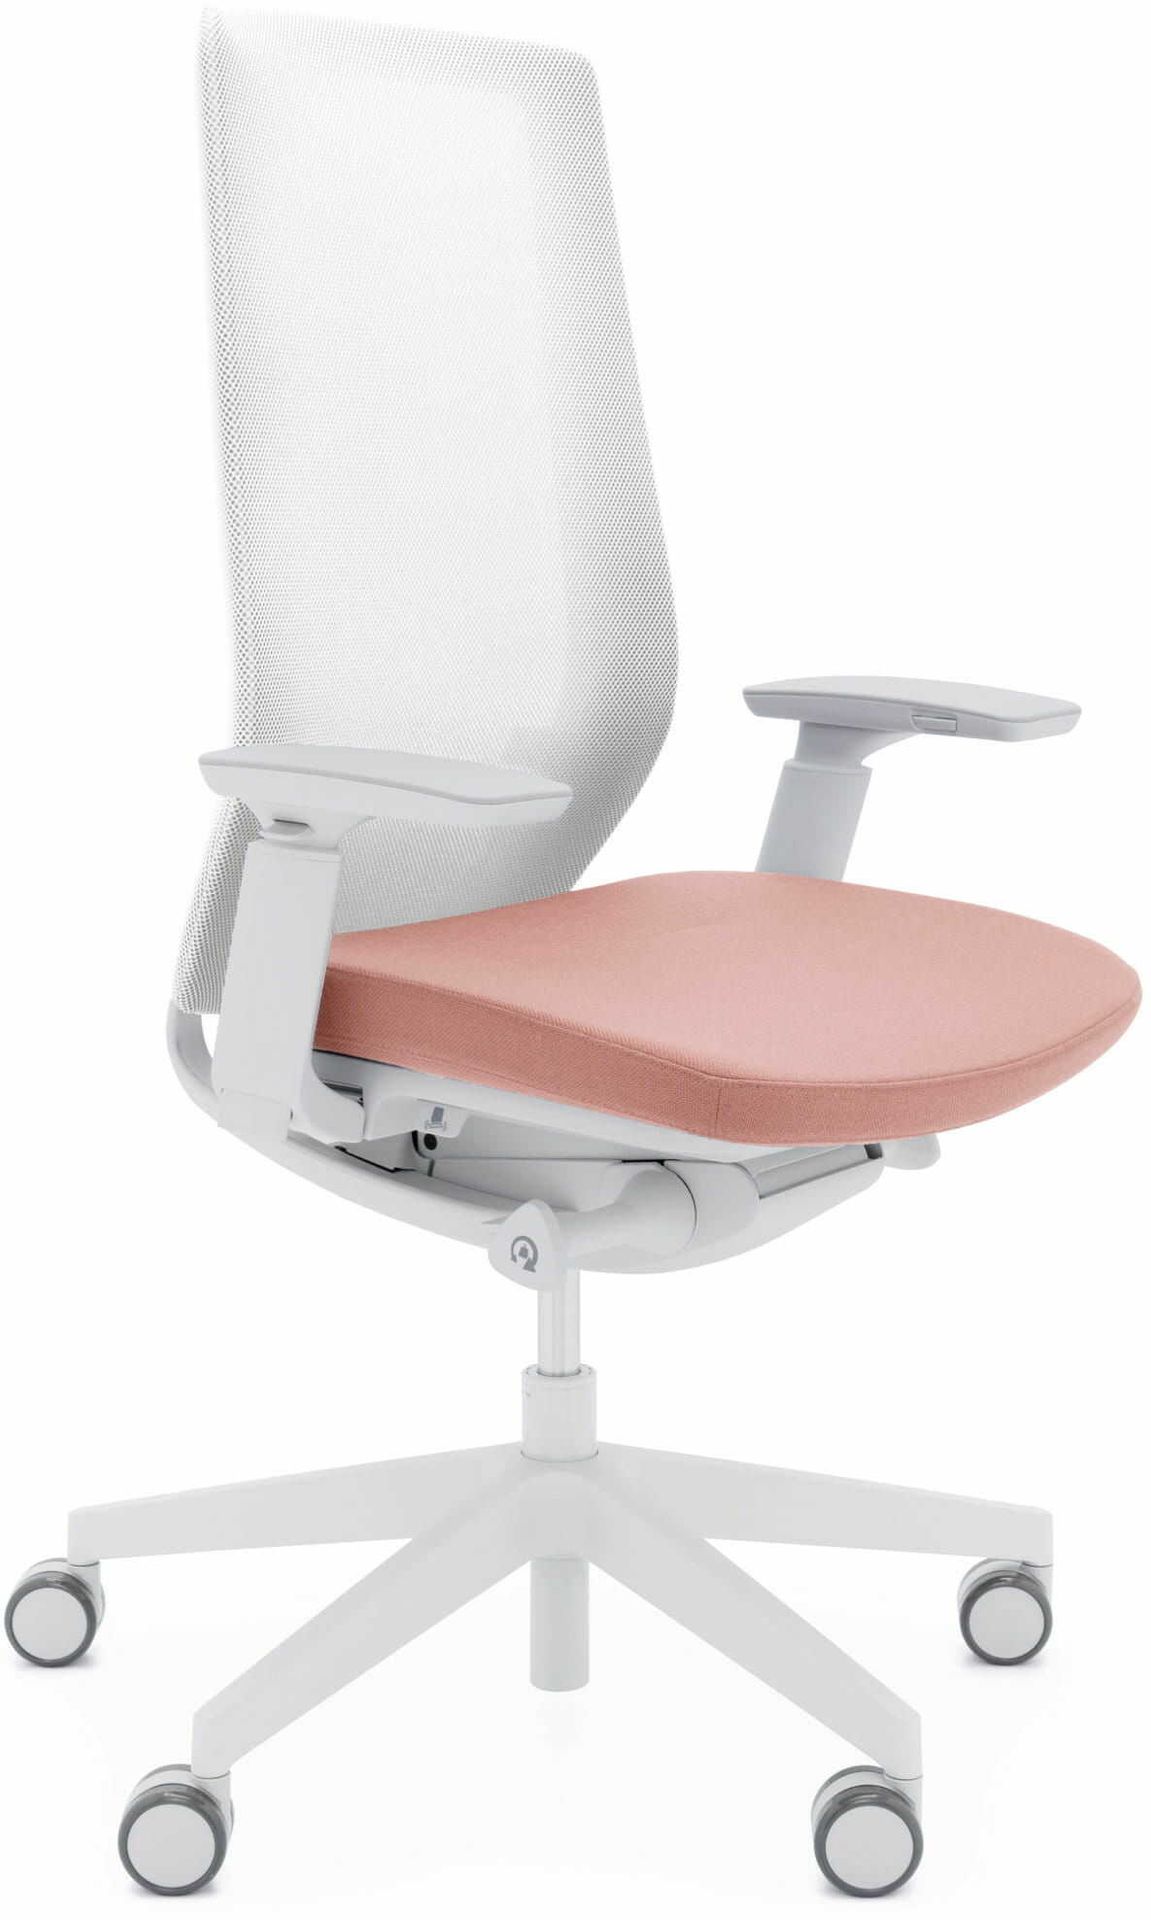 ProfiM Elastyczne krzesło AccisPro - jasnoszare AP 150SFL-J